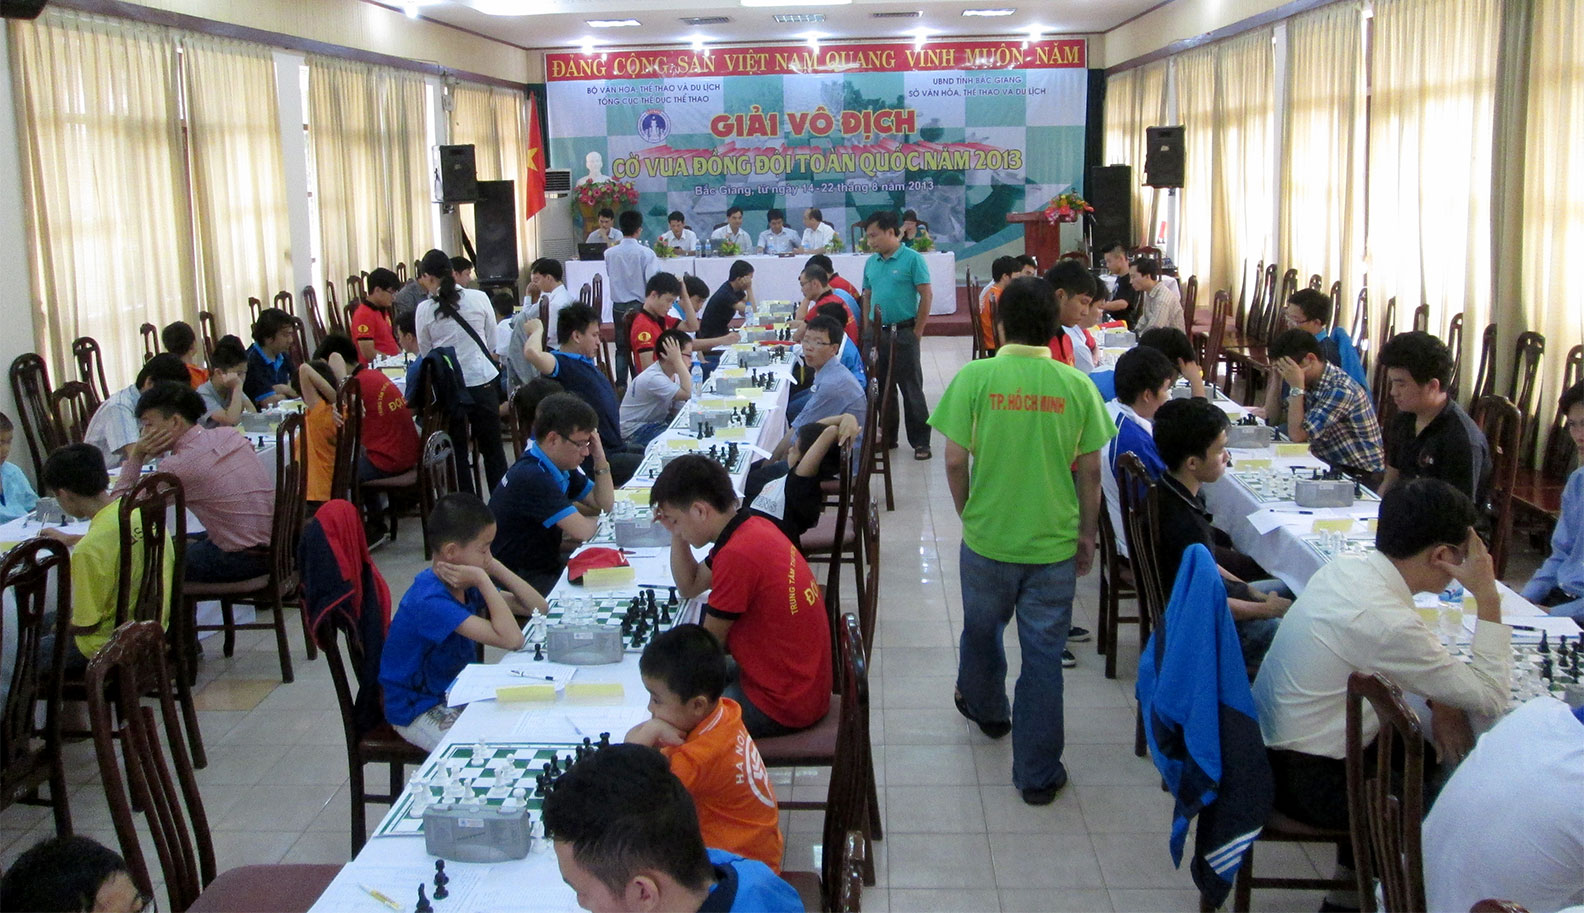 Giải cờ vua đồng đội toàn quốc năm 2013